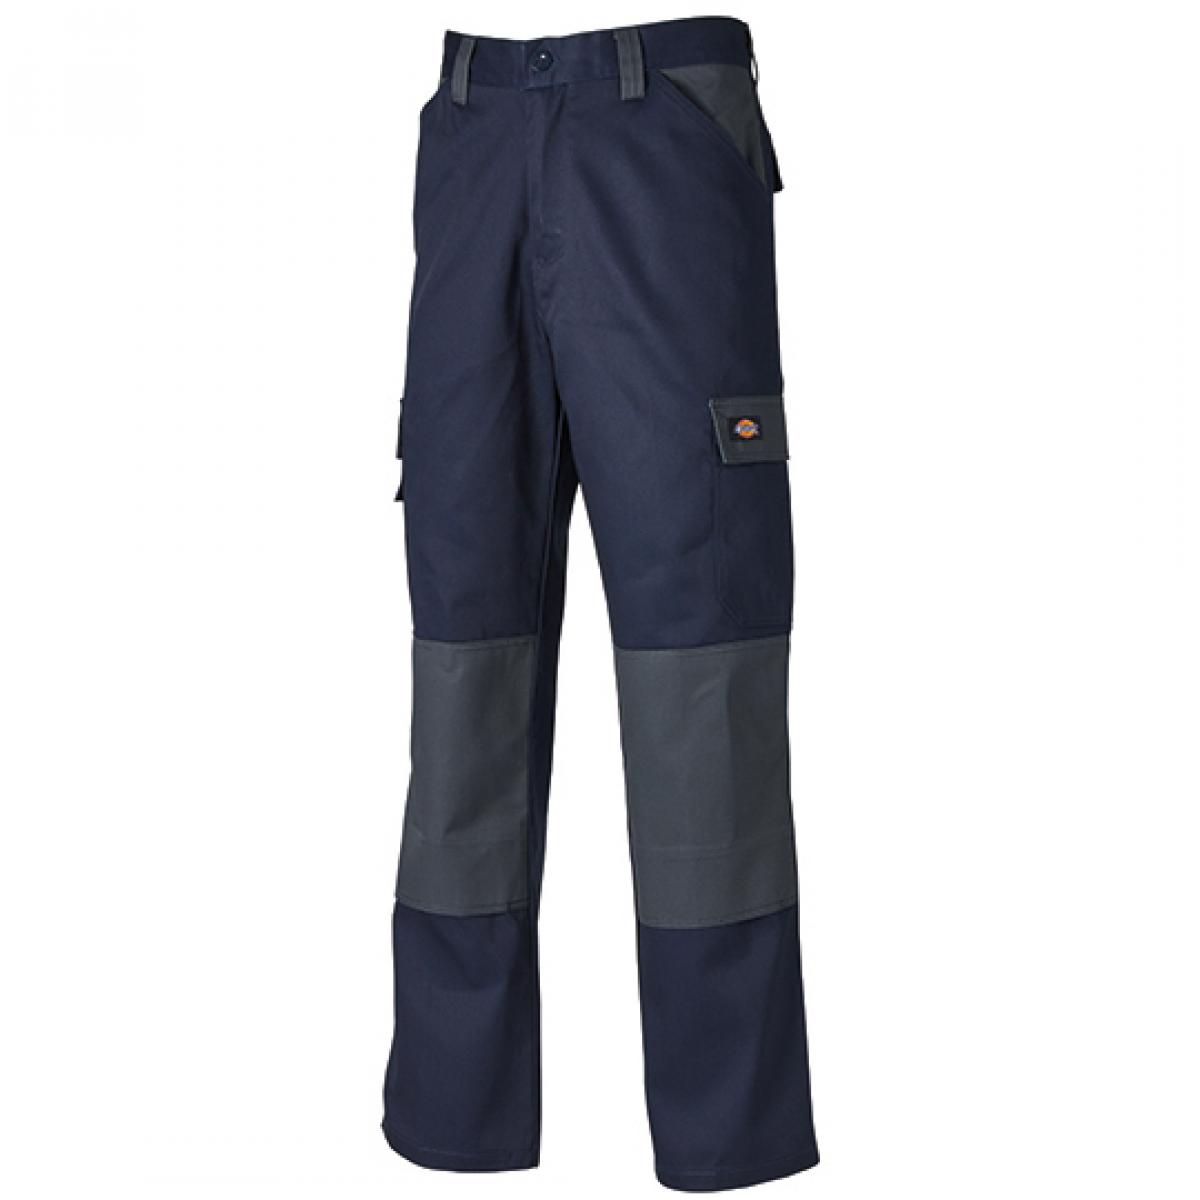 Hersteller: Dickies Herstellernummer: ED24/7 Artikelbezeichnung: Everyday Workwear Bundhose - ED24/7 Farbe: Navy/Grey (Solid)